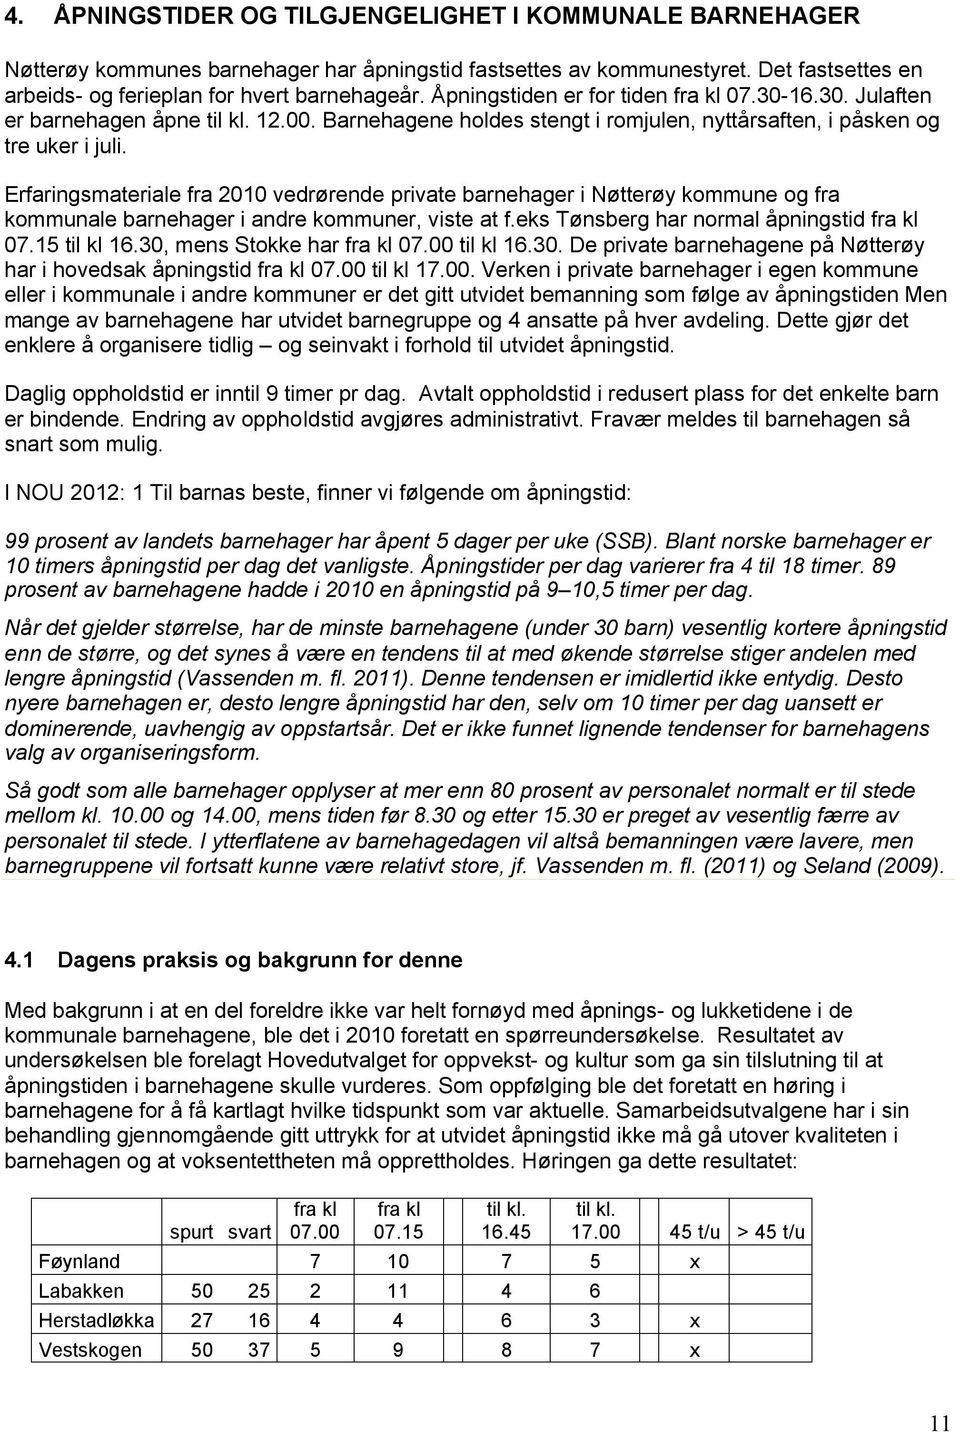 Erfaringsmateriale fra 2010 vedrørende private barnehager i Nøtterøy kommune og fra kommunale barnehager i andre kommuner, viste at f.eks Tønsberg har normal åpningstid fra kl 07.15 til kl 16.